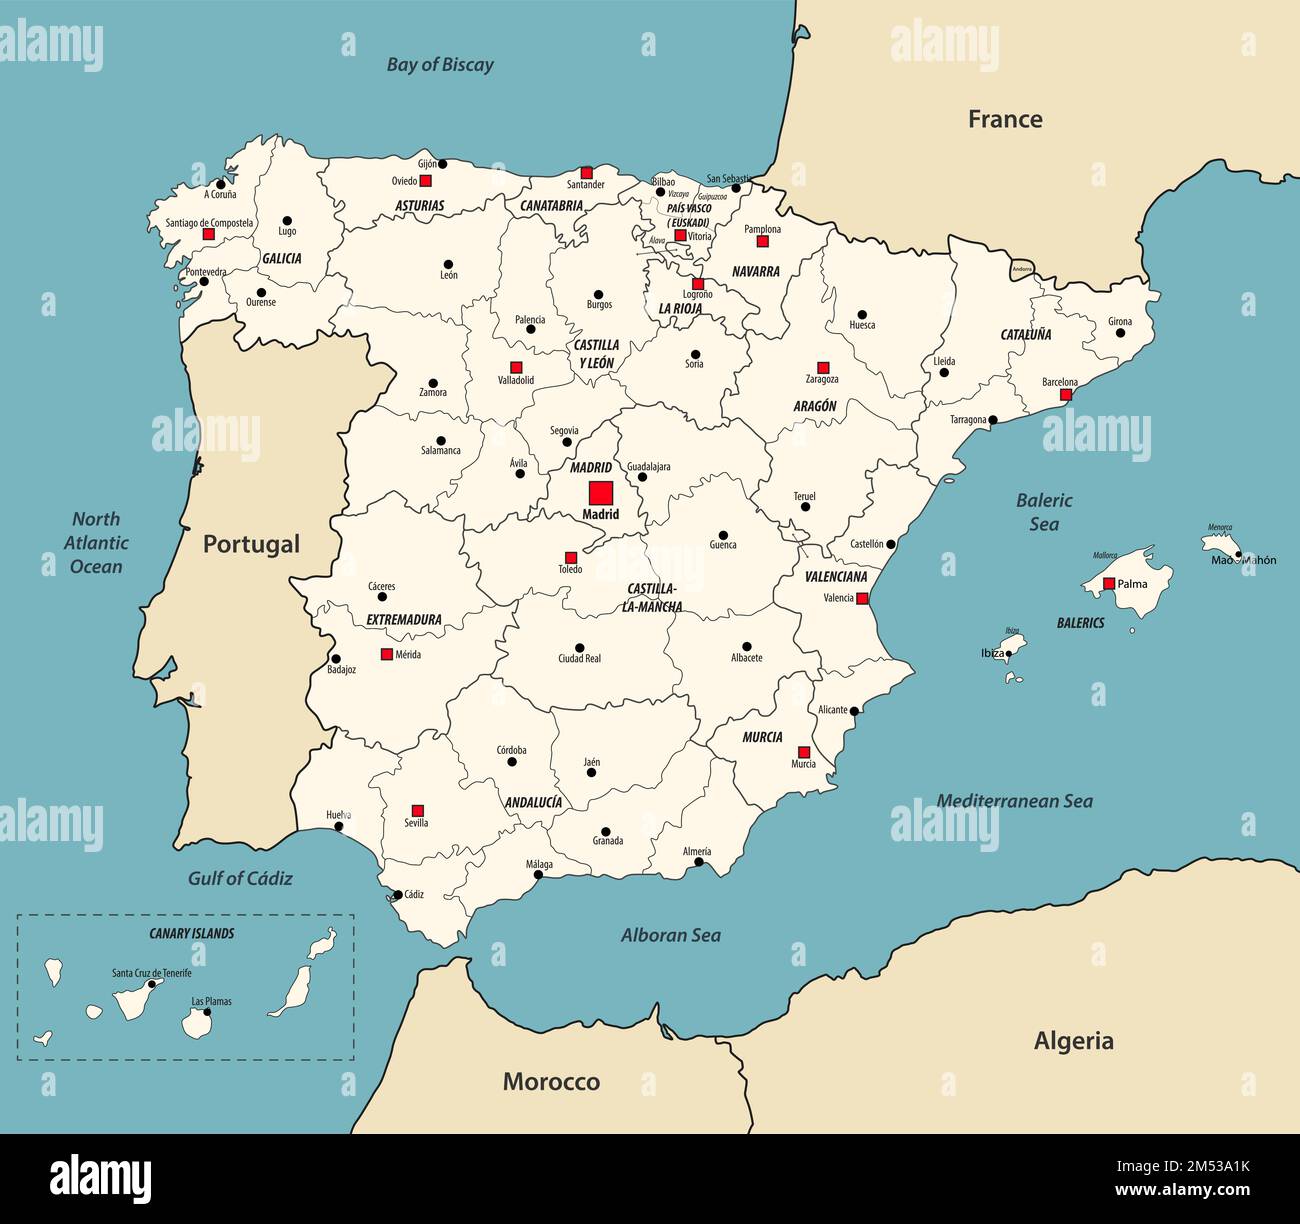 Carte de l'Espagne avec les pays voisins. Illustration vectorielle Illustration de Vecteur